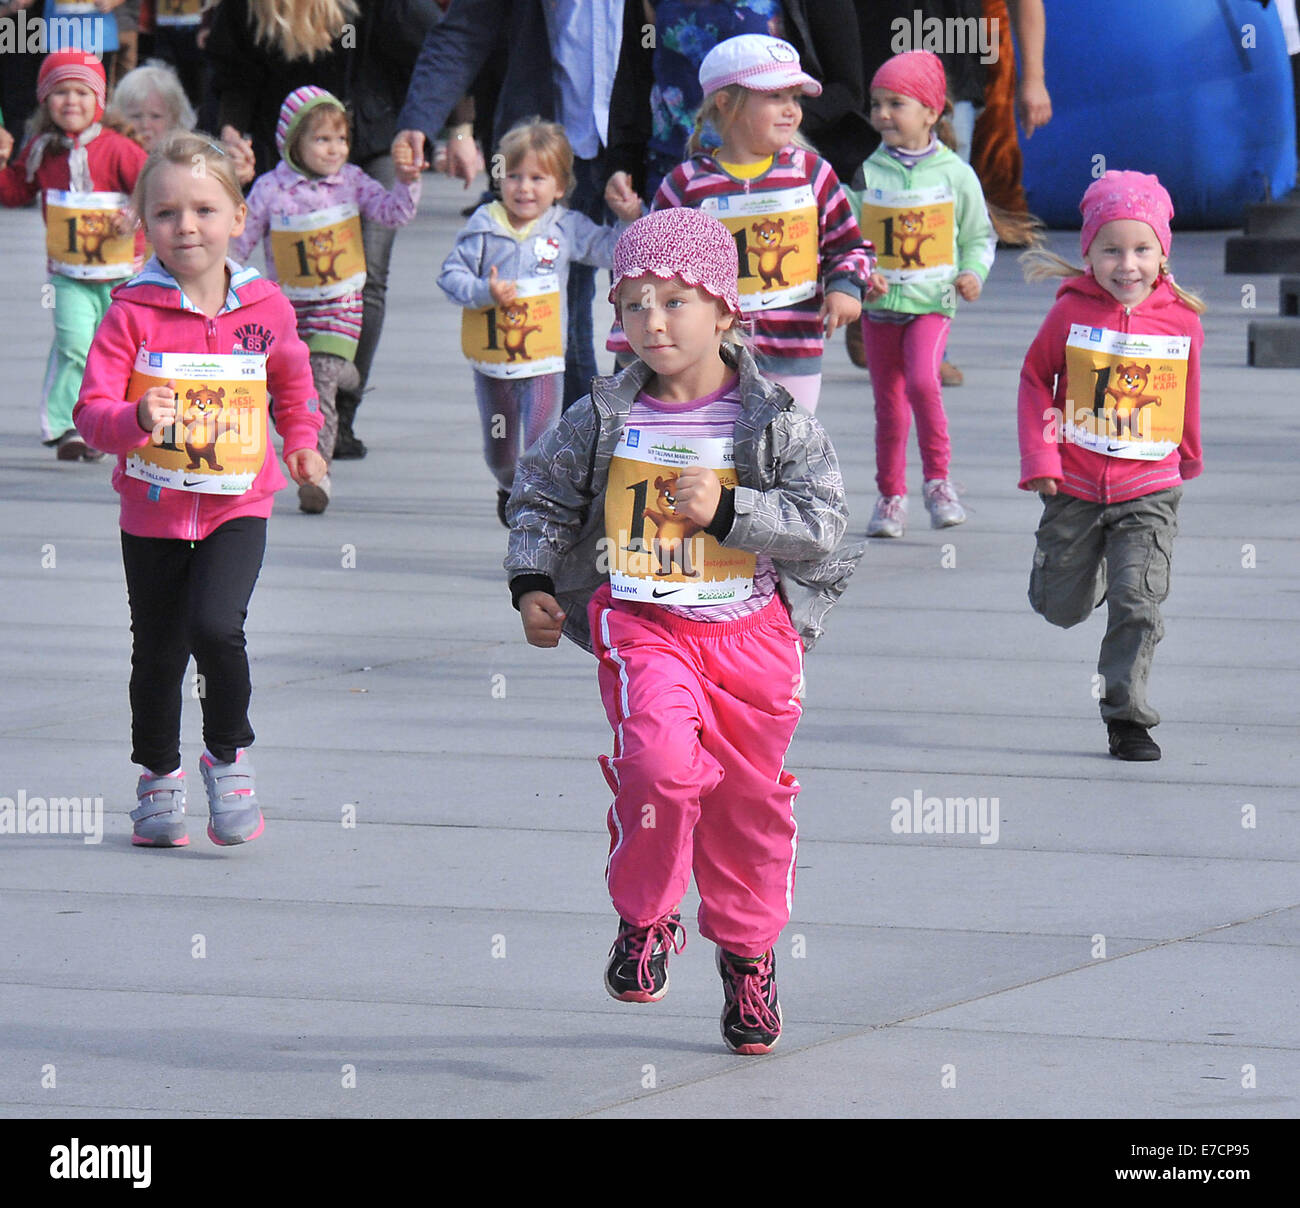 Tallinn, Estland. 13. Sep, 2014. Kinder laufen in einem 300m langen Rennen am internationalen Kinder Mini-Marathon in Tallinn, der Hauptstadt von Estland, am 13. September 2014. Etwa 5.000 estnischen und internationalen Kinder im Alter von 2-12 Jahren nahmen an der Veranstaltung. © Viktor Vesterinen/Xinhua/Alamy Live-Nachrichten Stockfoto